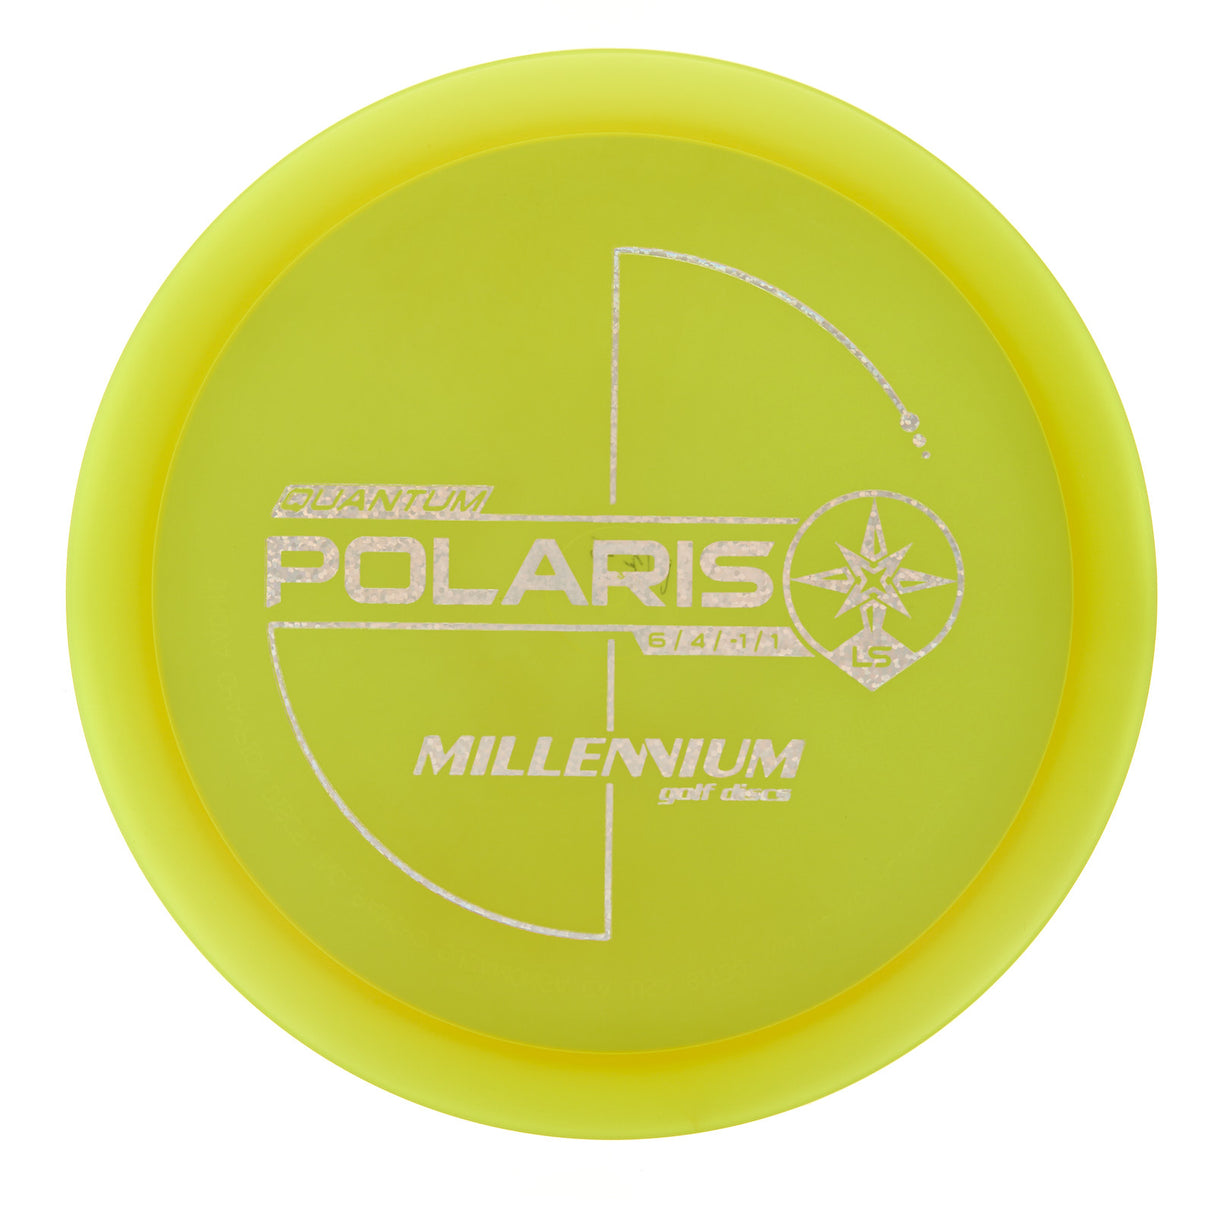 Millennium Polaris LS - Quantum 175g | Style 0001